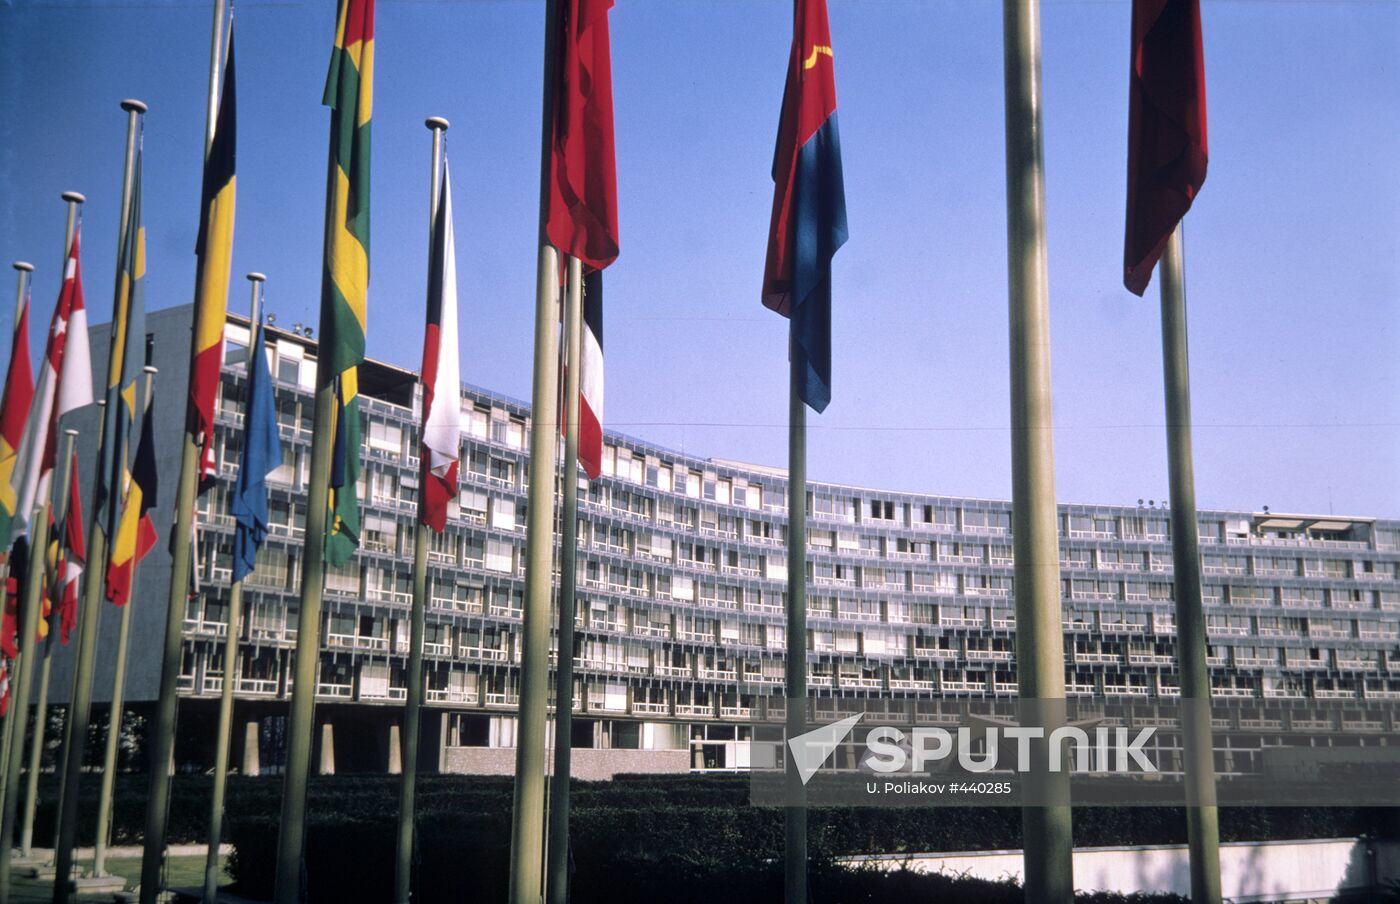 Building of UNESCO headquarters